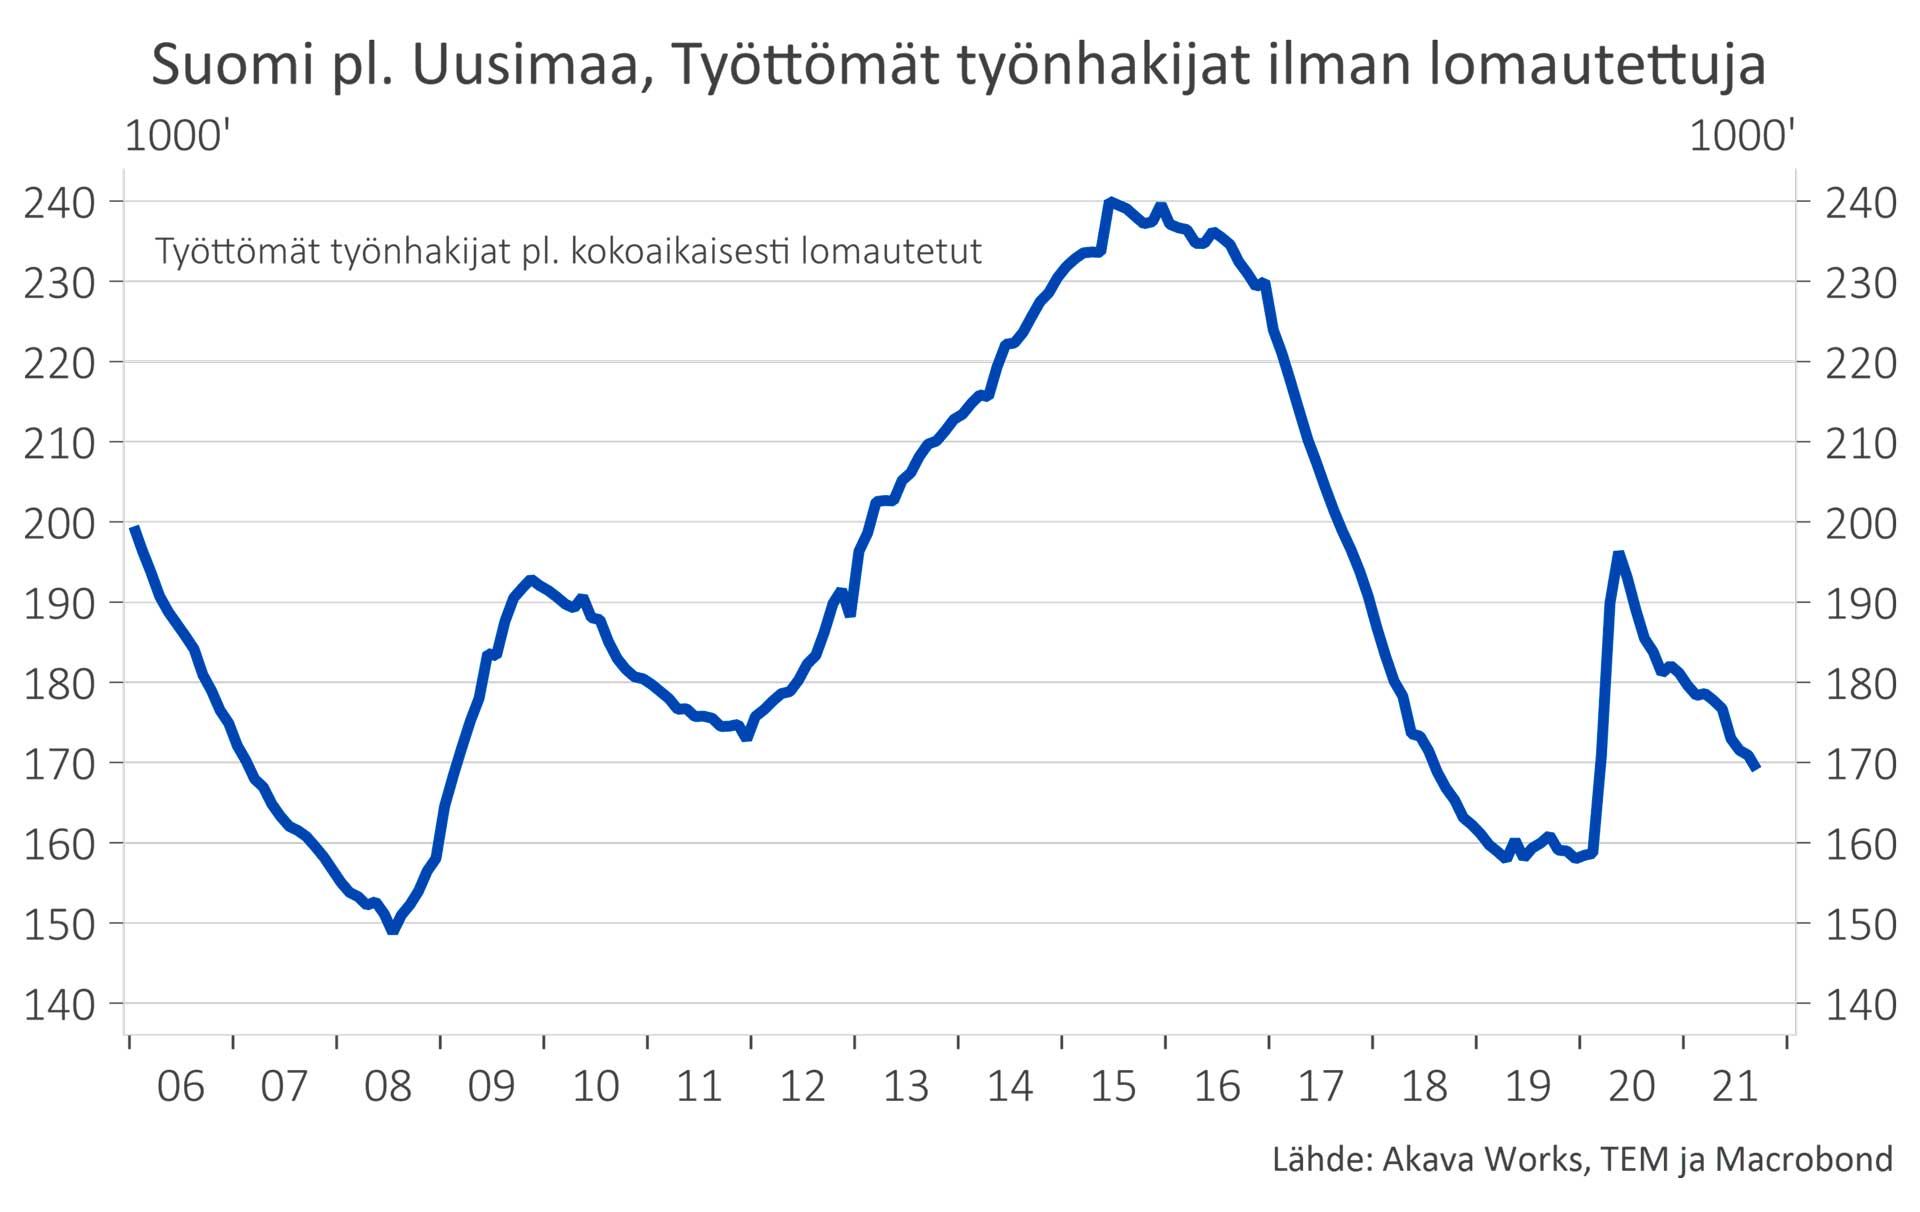 Kuva 6: Työttömät työnhakijat muualla kuin Uudellamaalla (ei sisällä kokoaikaisesti lomautettuja)